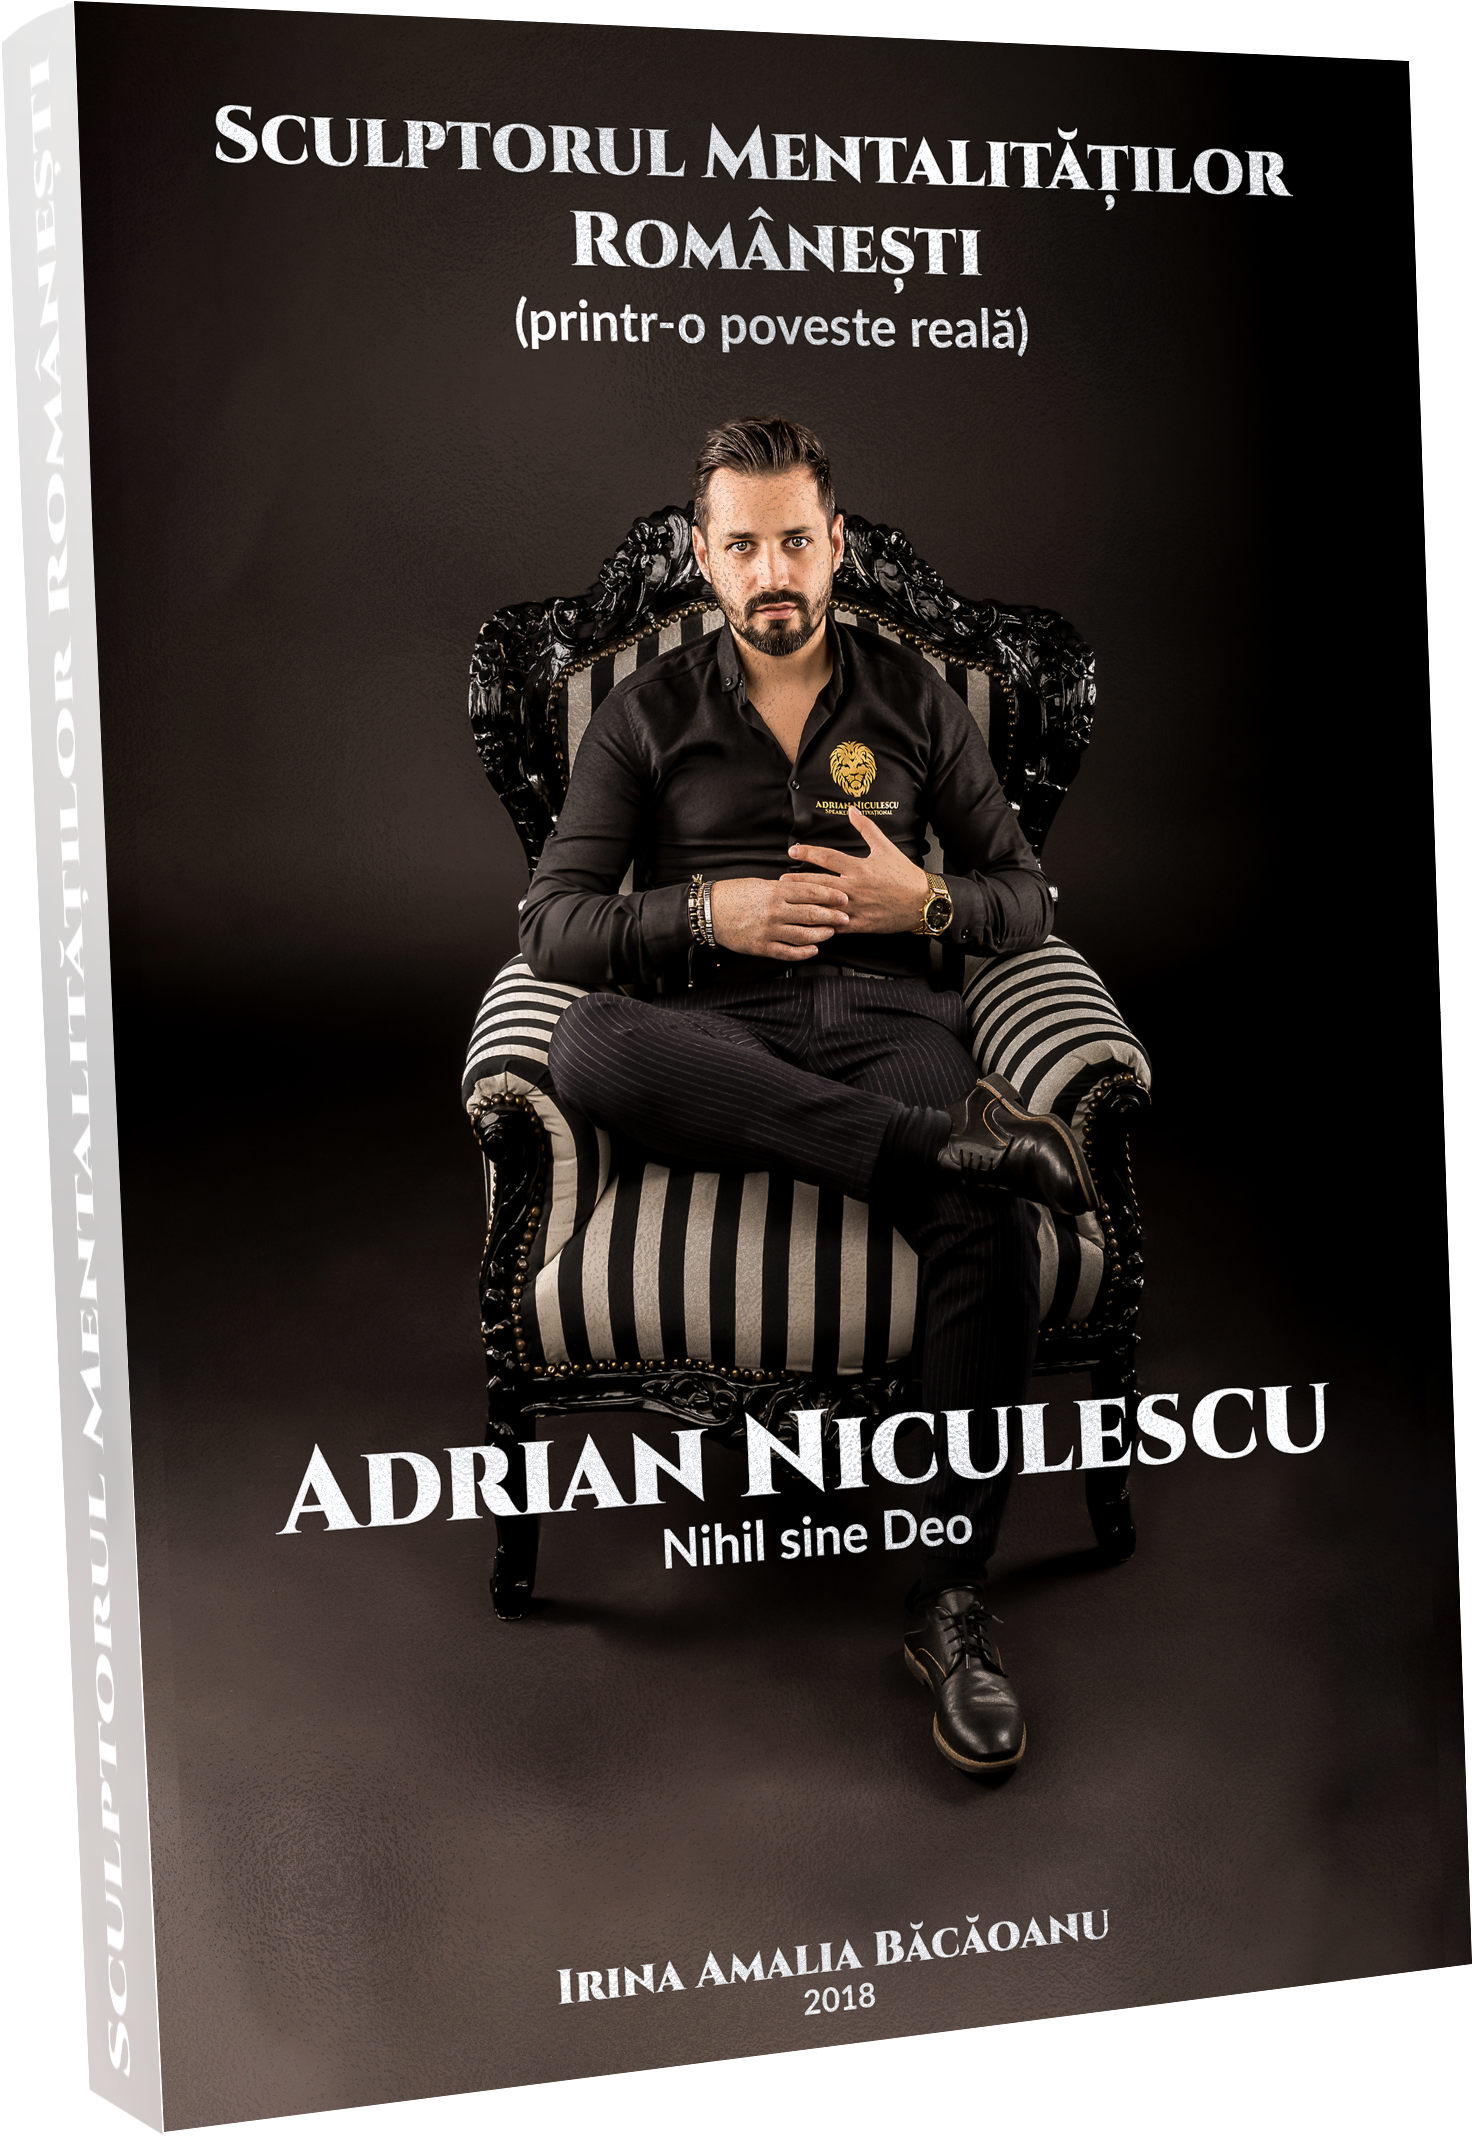 Book Mockup Transparent 01 Apr 2018 - Adrian Niculescu Carte (3647x2736), Png Download